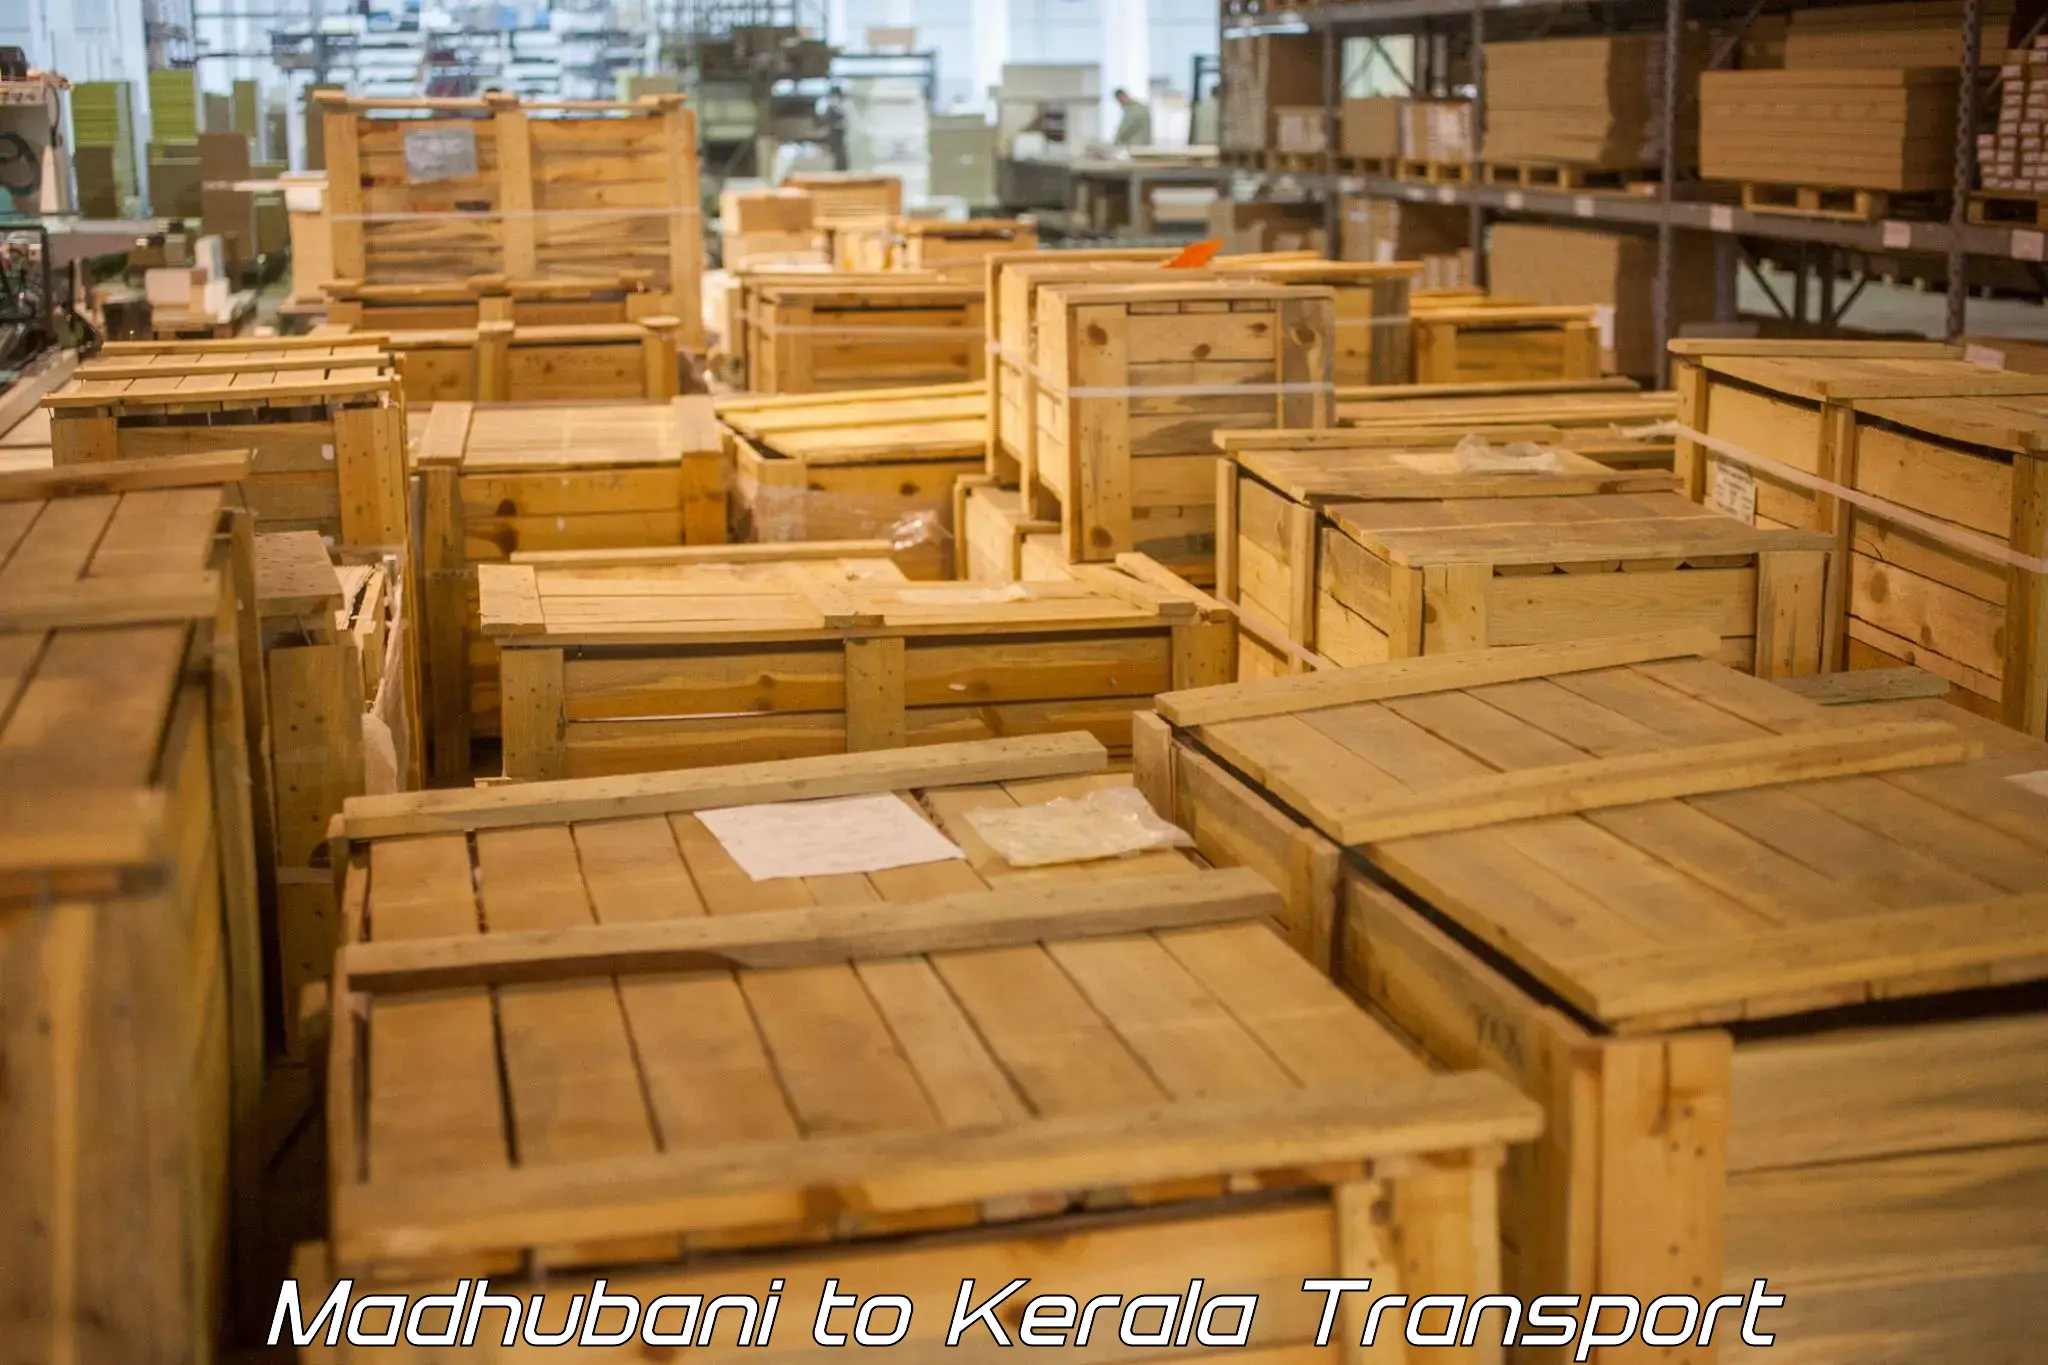 Cargo transportation services Madhubani to Cherthala